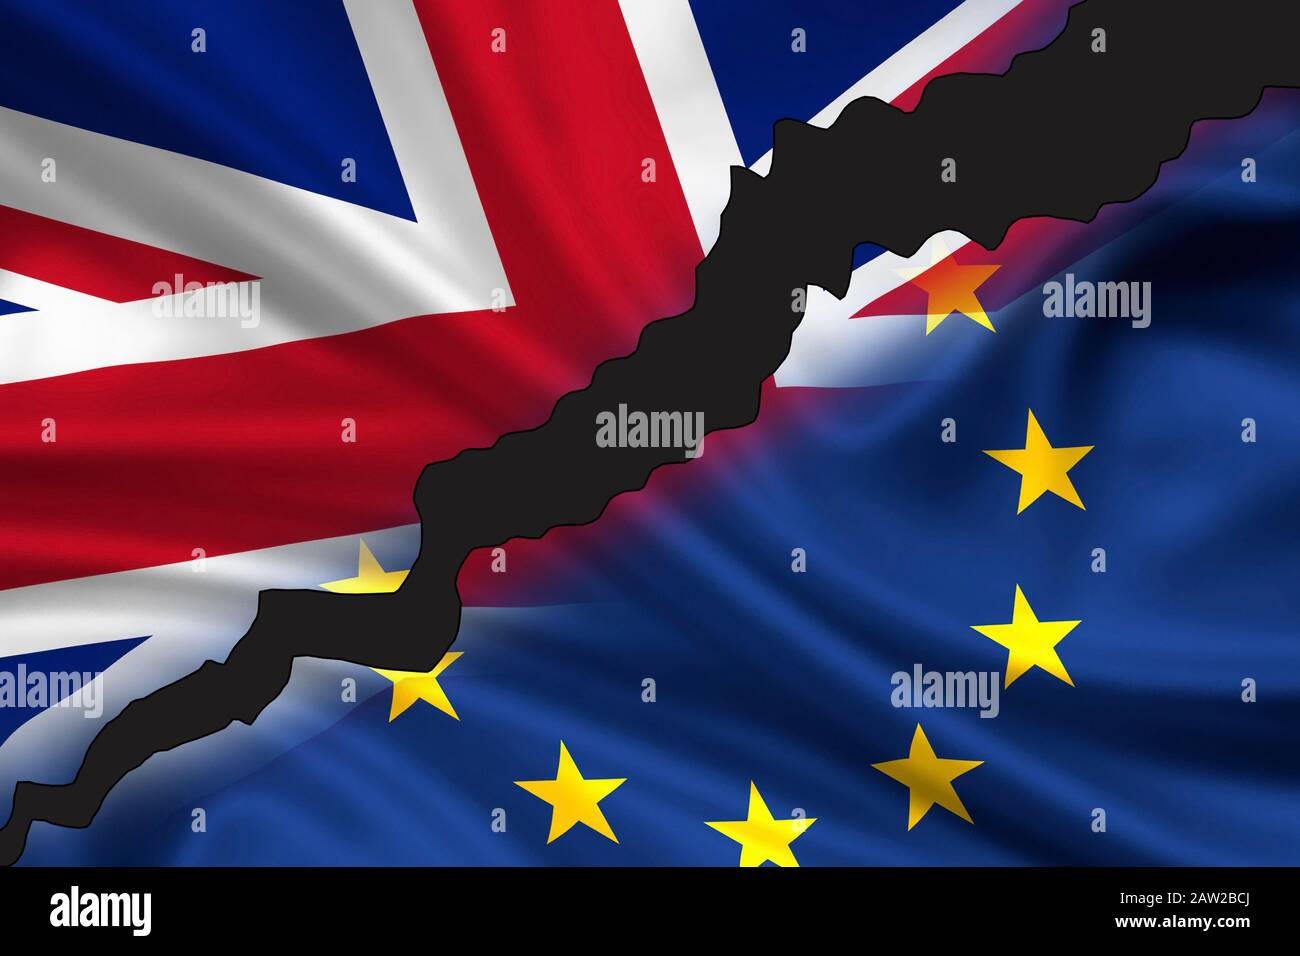 Londres, Reino Unido - 24 de junio de 2016: Bandera dividida de Gran Bretaña (Union Jack) y Europa que simboliza la salida del Reino Unido de Europa (Brexi Foto de stock